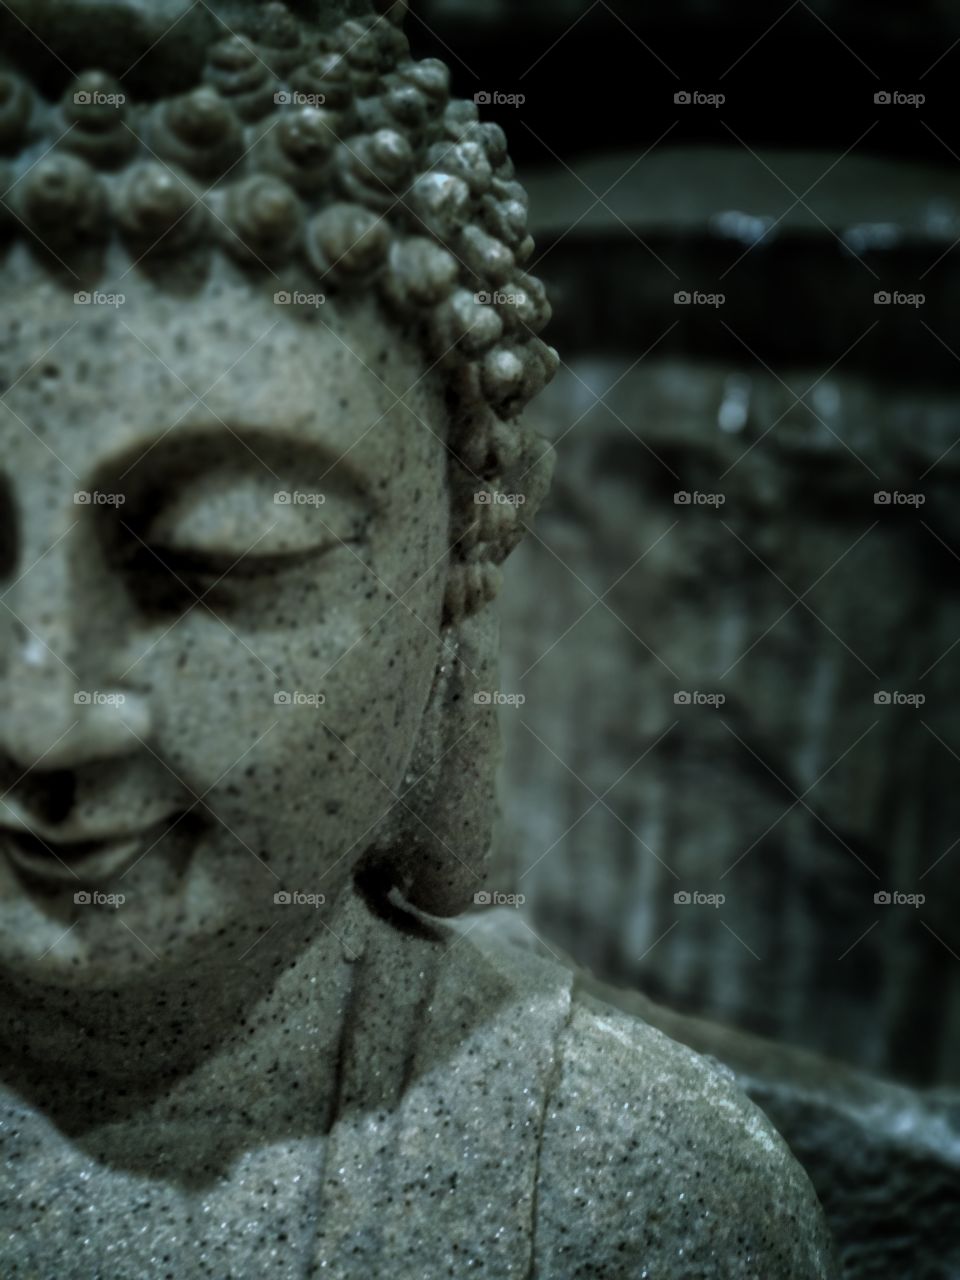 Buddha smiling at peace.